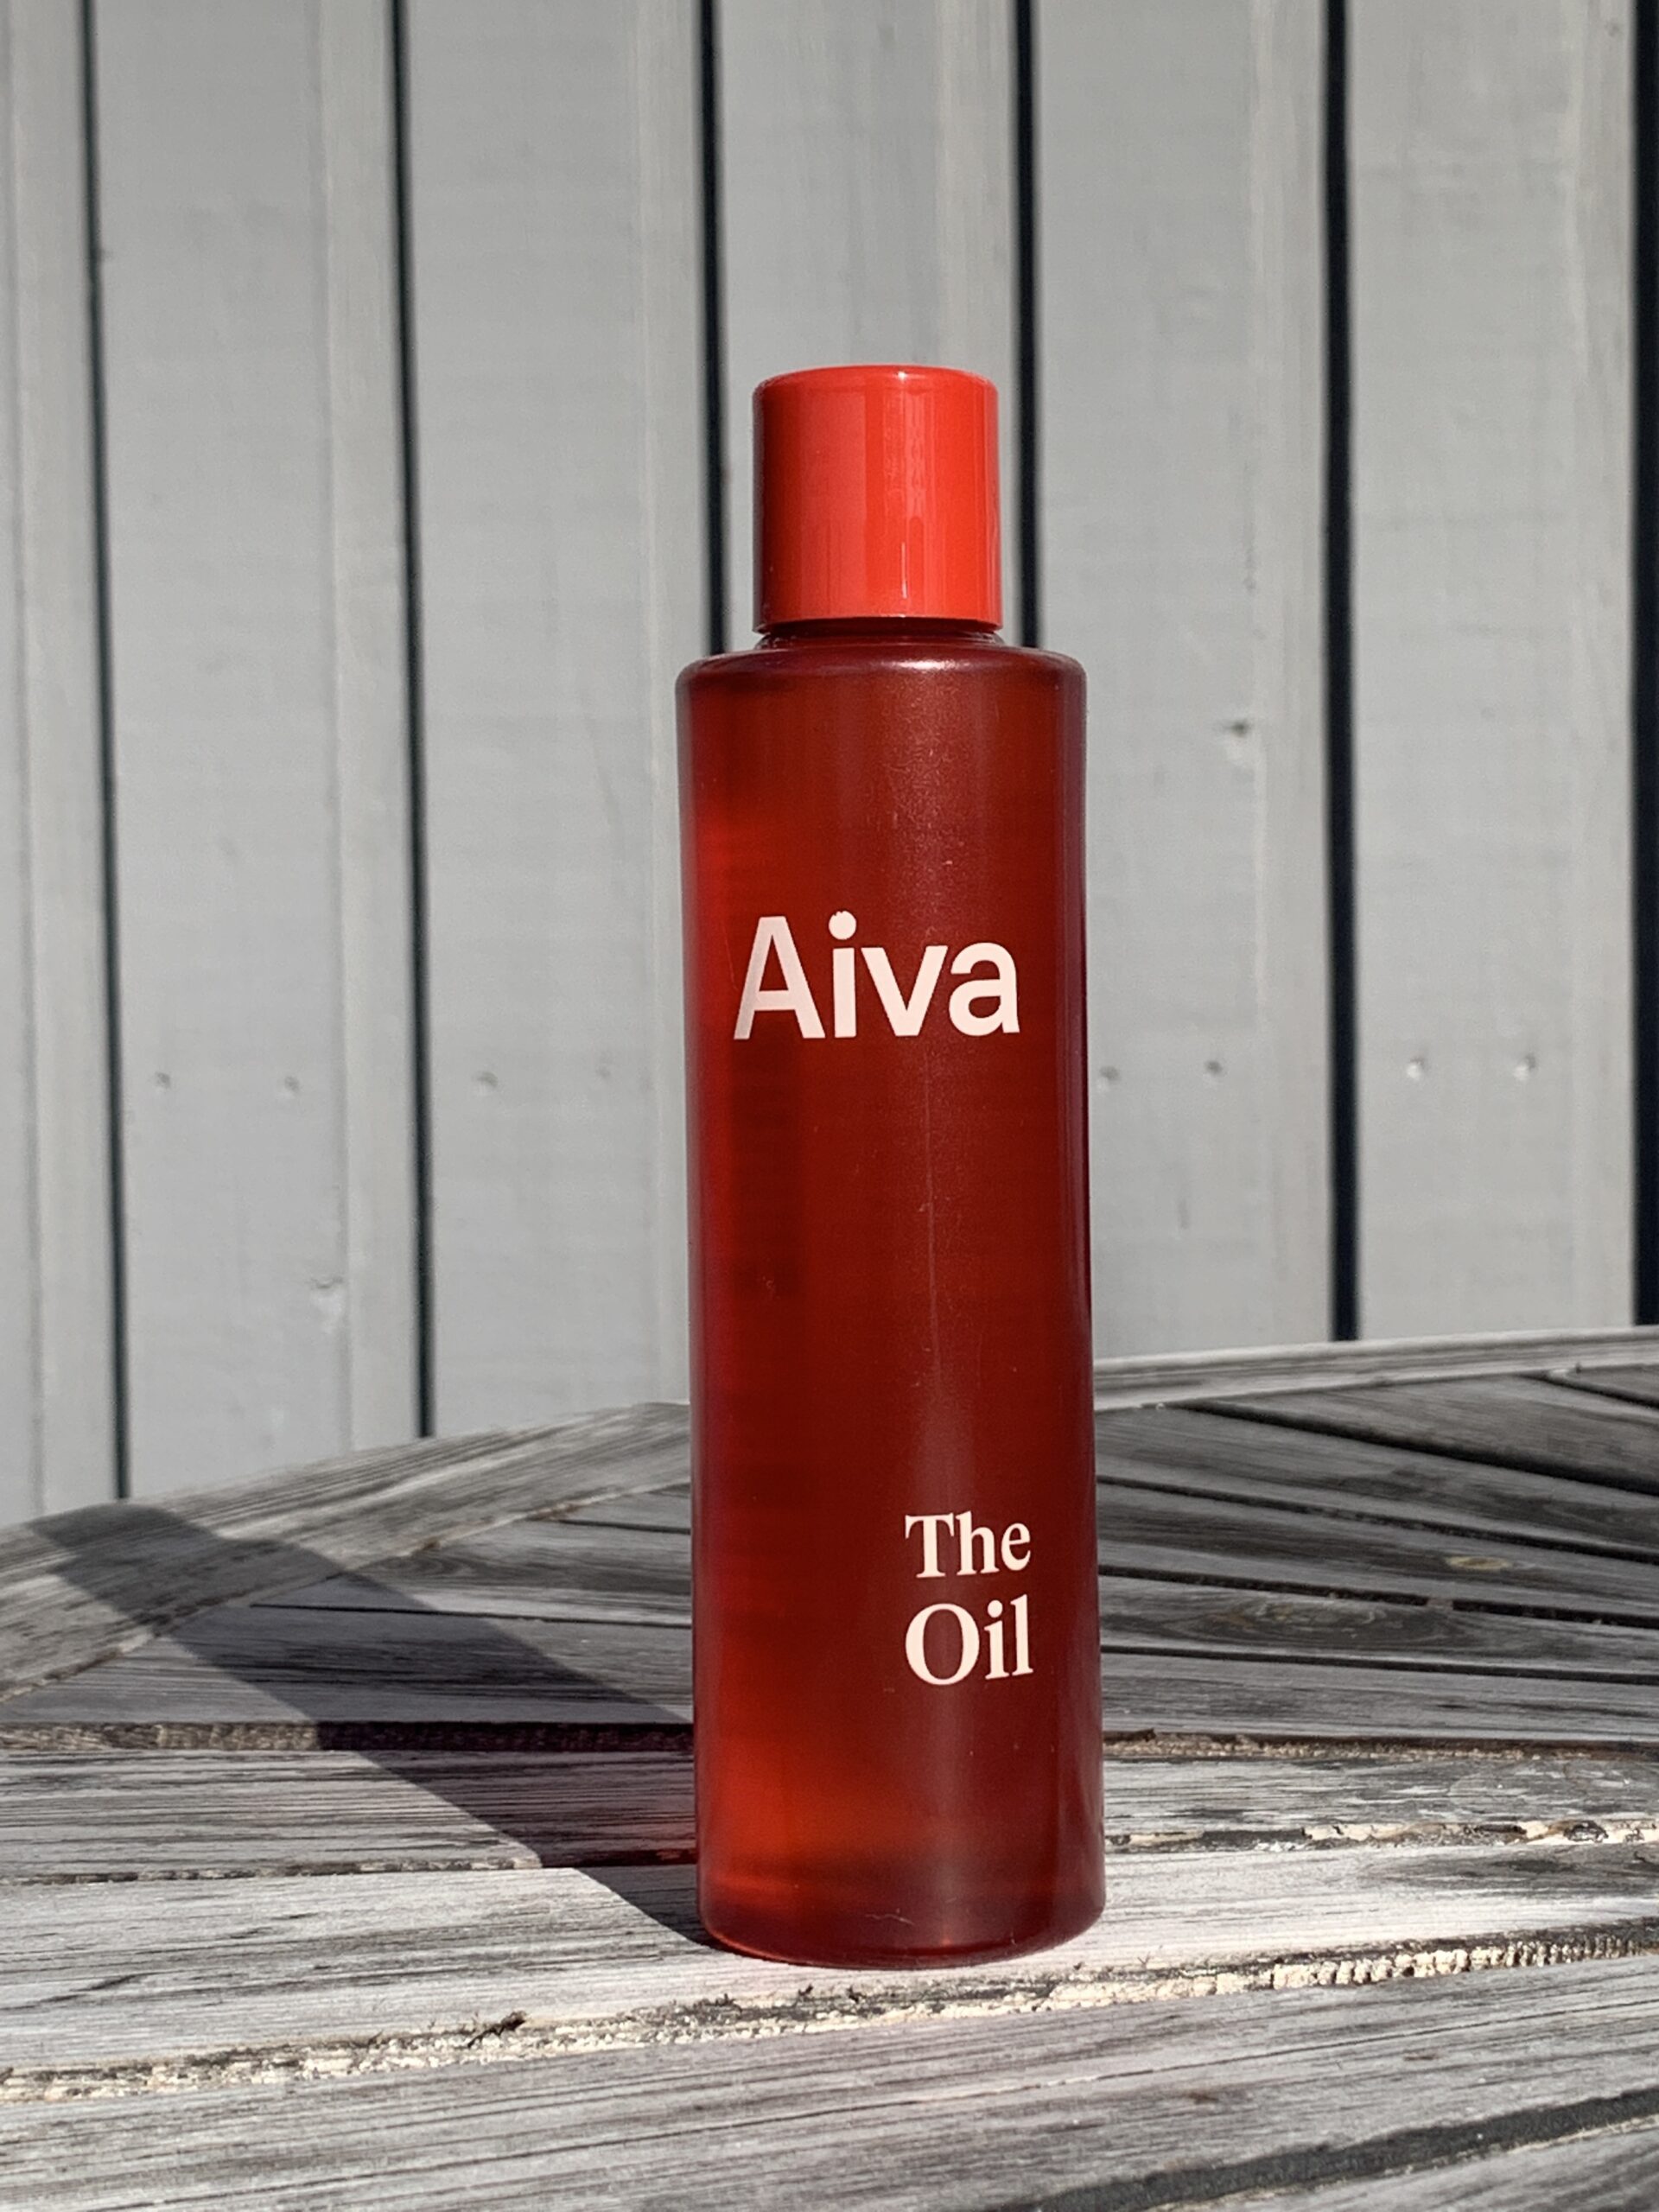 Aiva The Oil